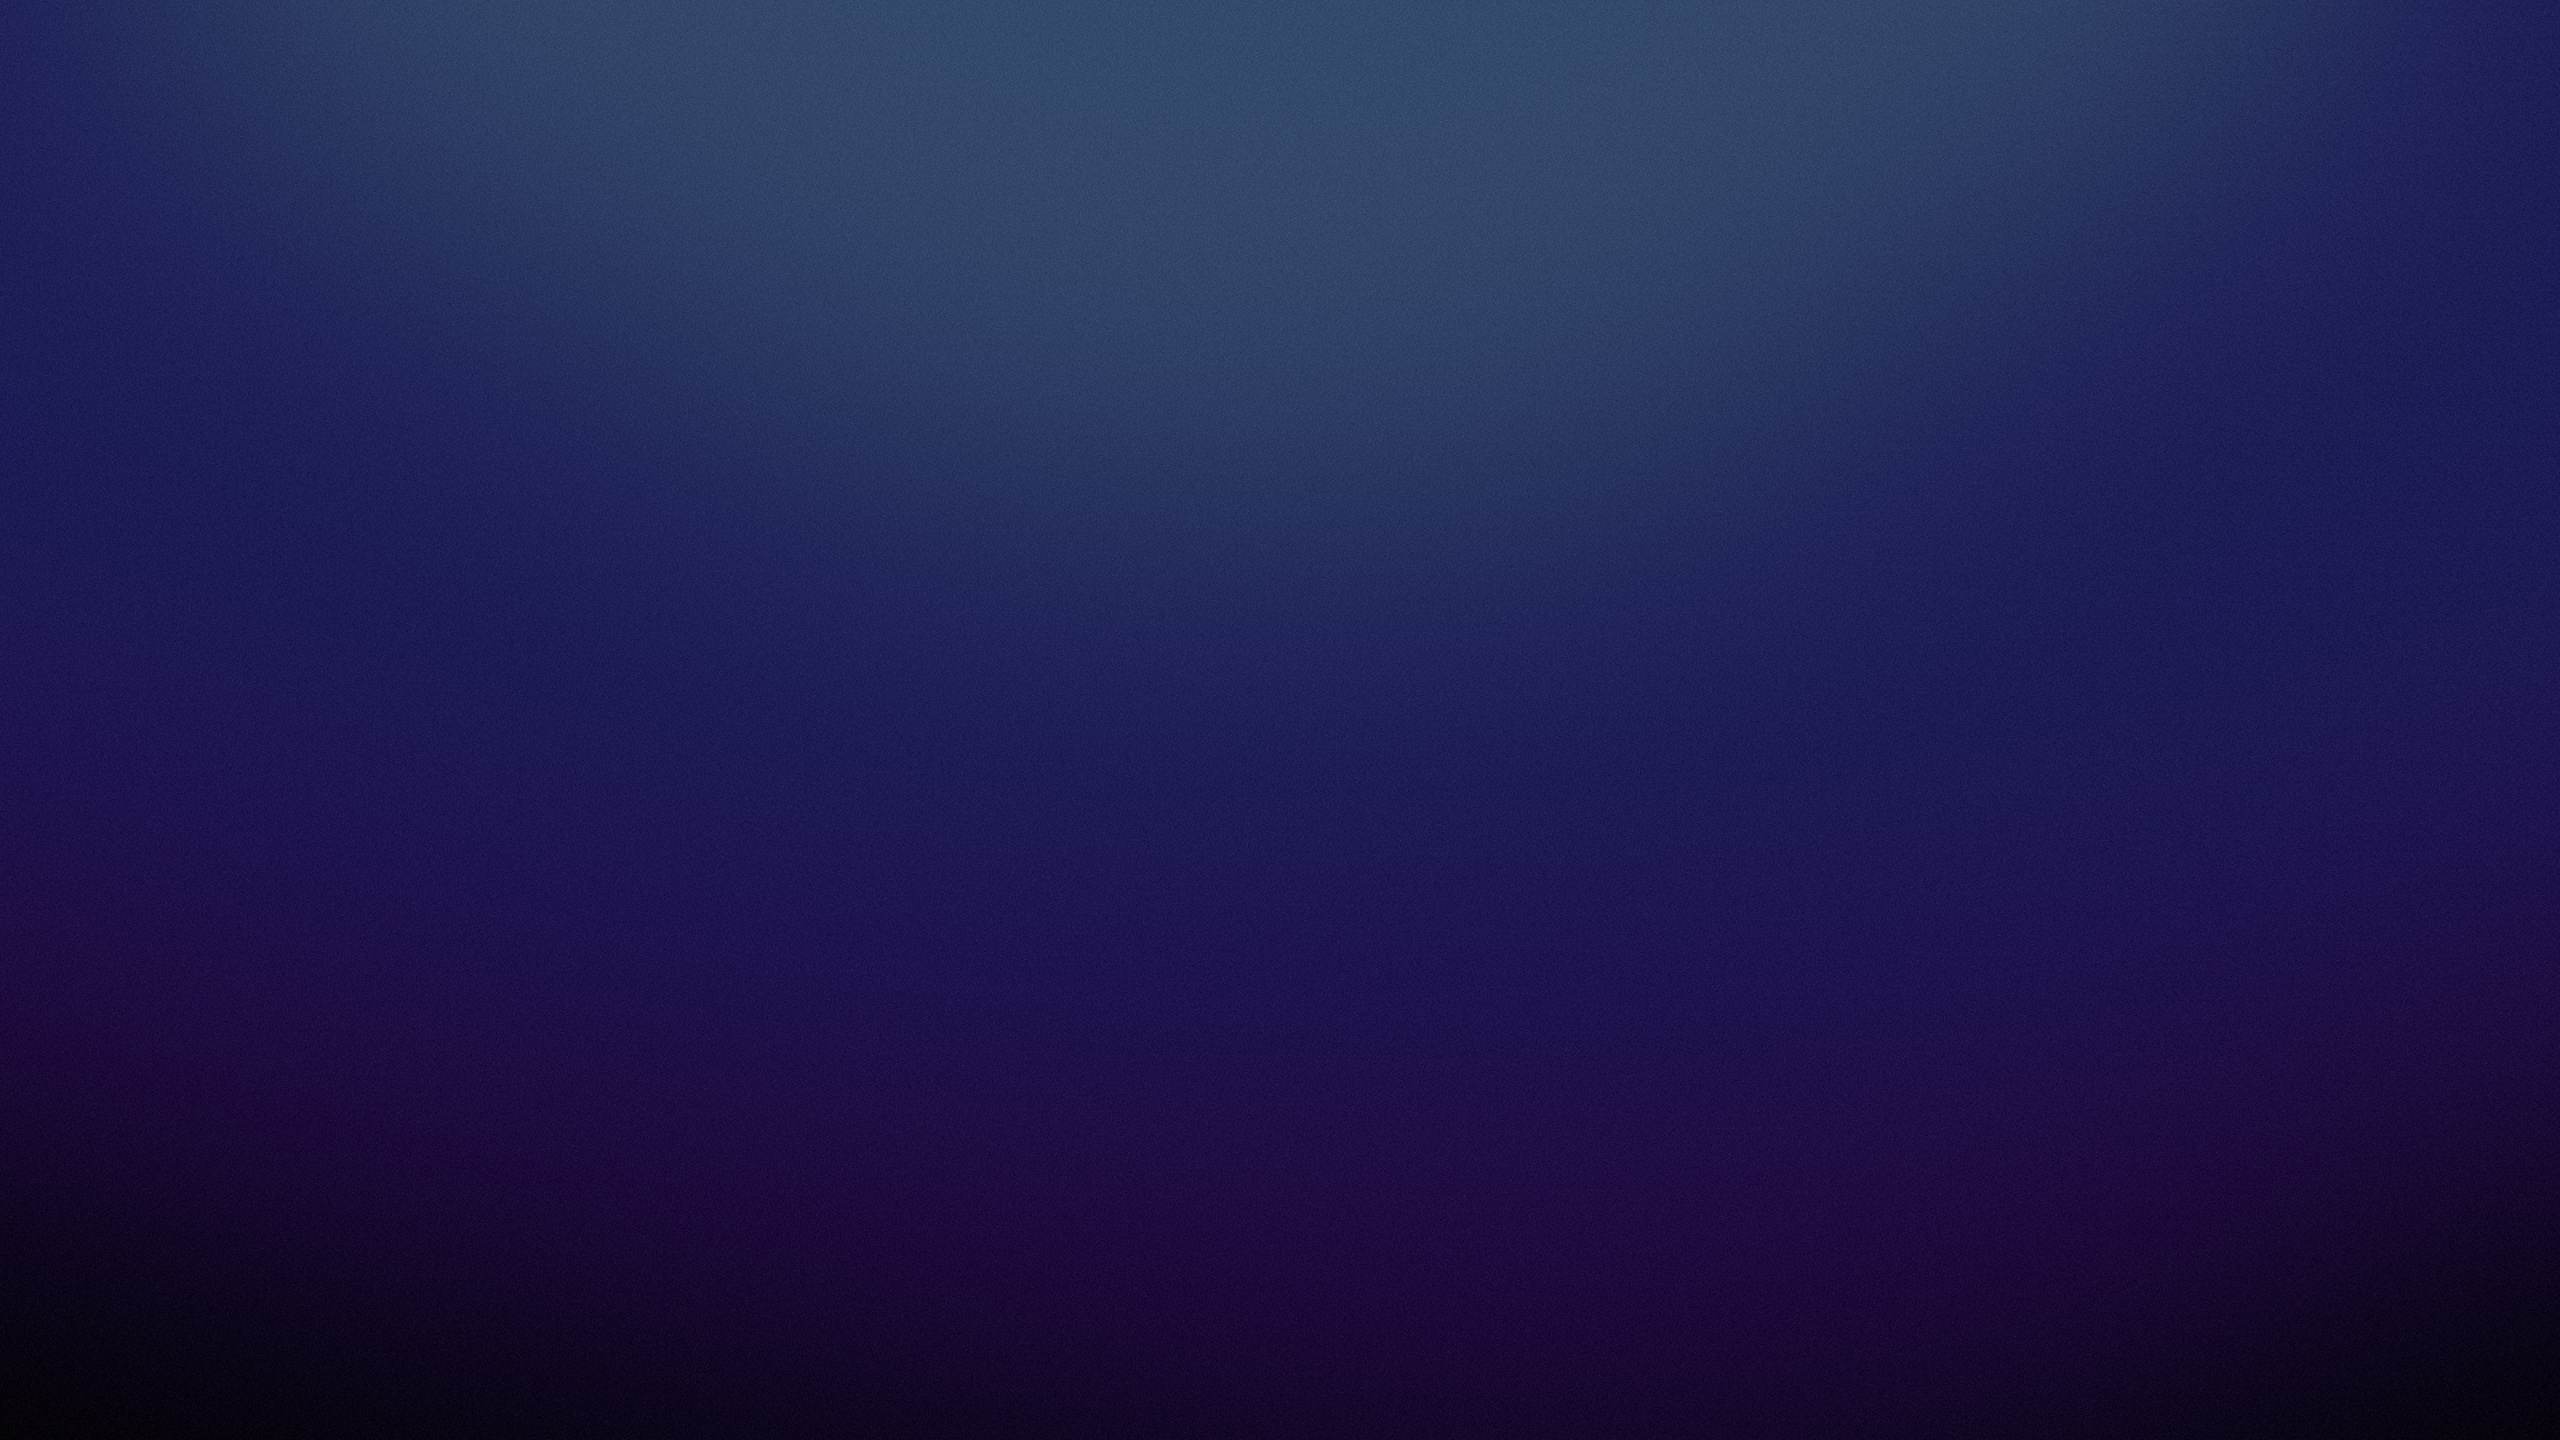 紫罗兰色, 紫色的, 黑色的, 钴蓝色的, 电蓝色的 壁纸 2560x1440 允许